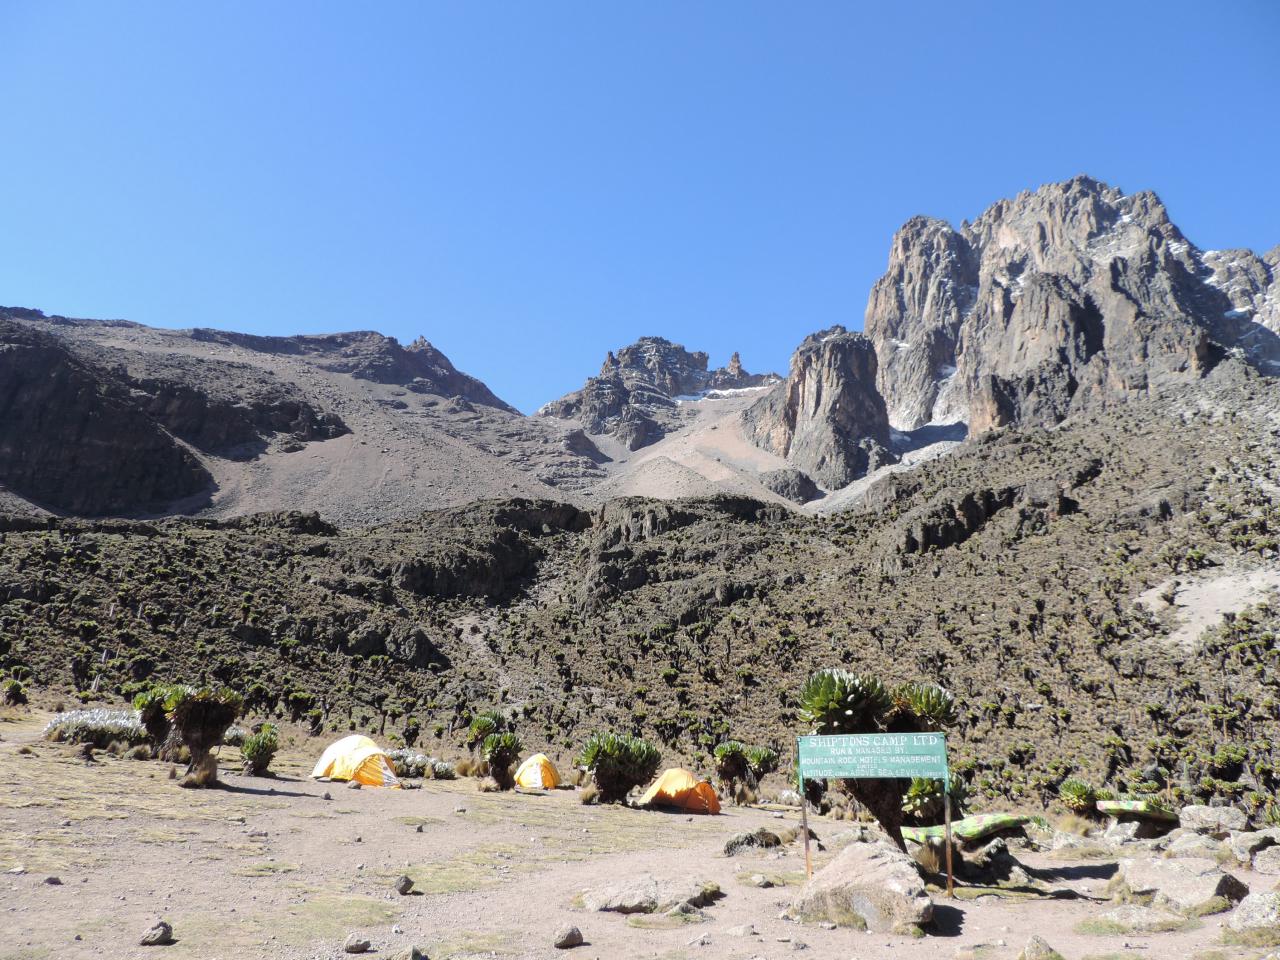 Mount Kenya Climbing Adventure Tour, Mountain Adventures,YHA Kenya Travel.Safaris.